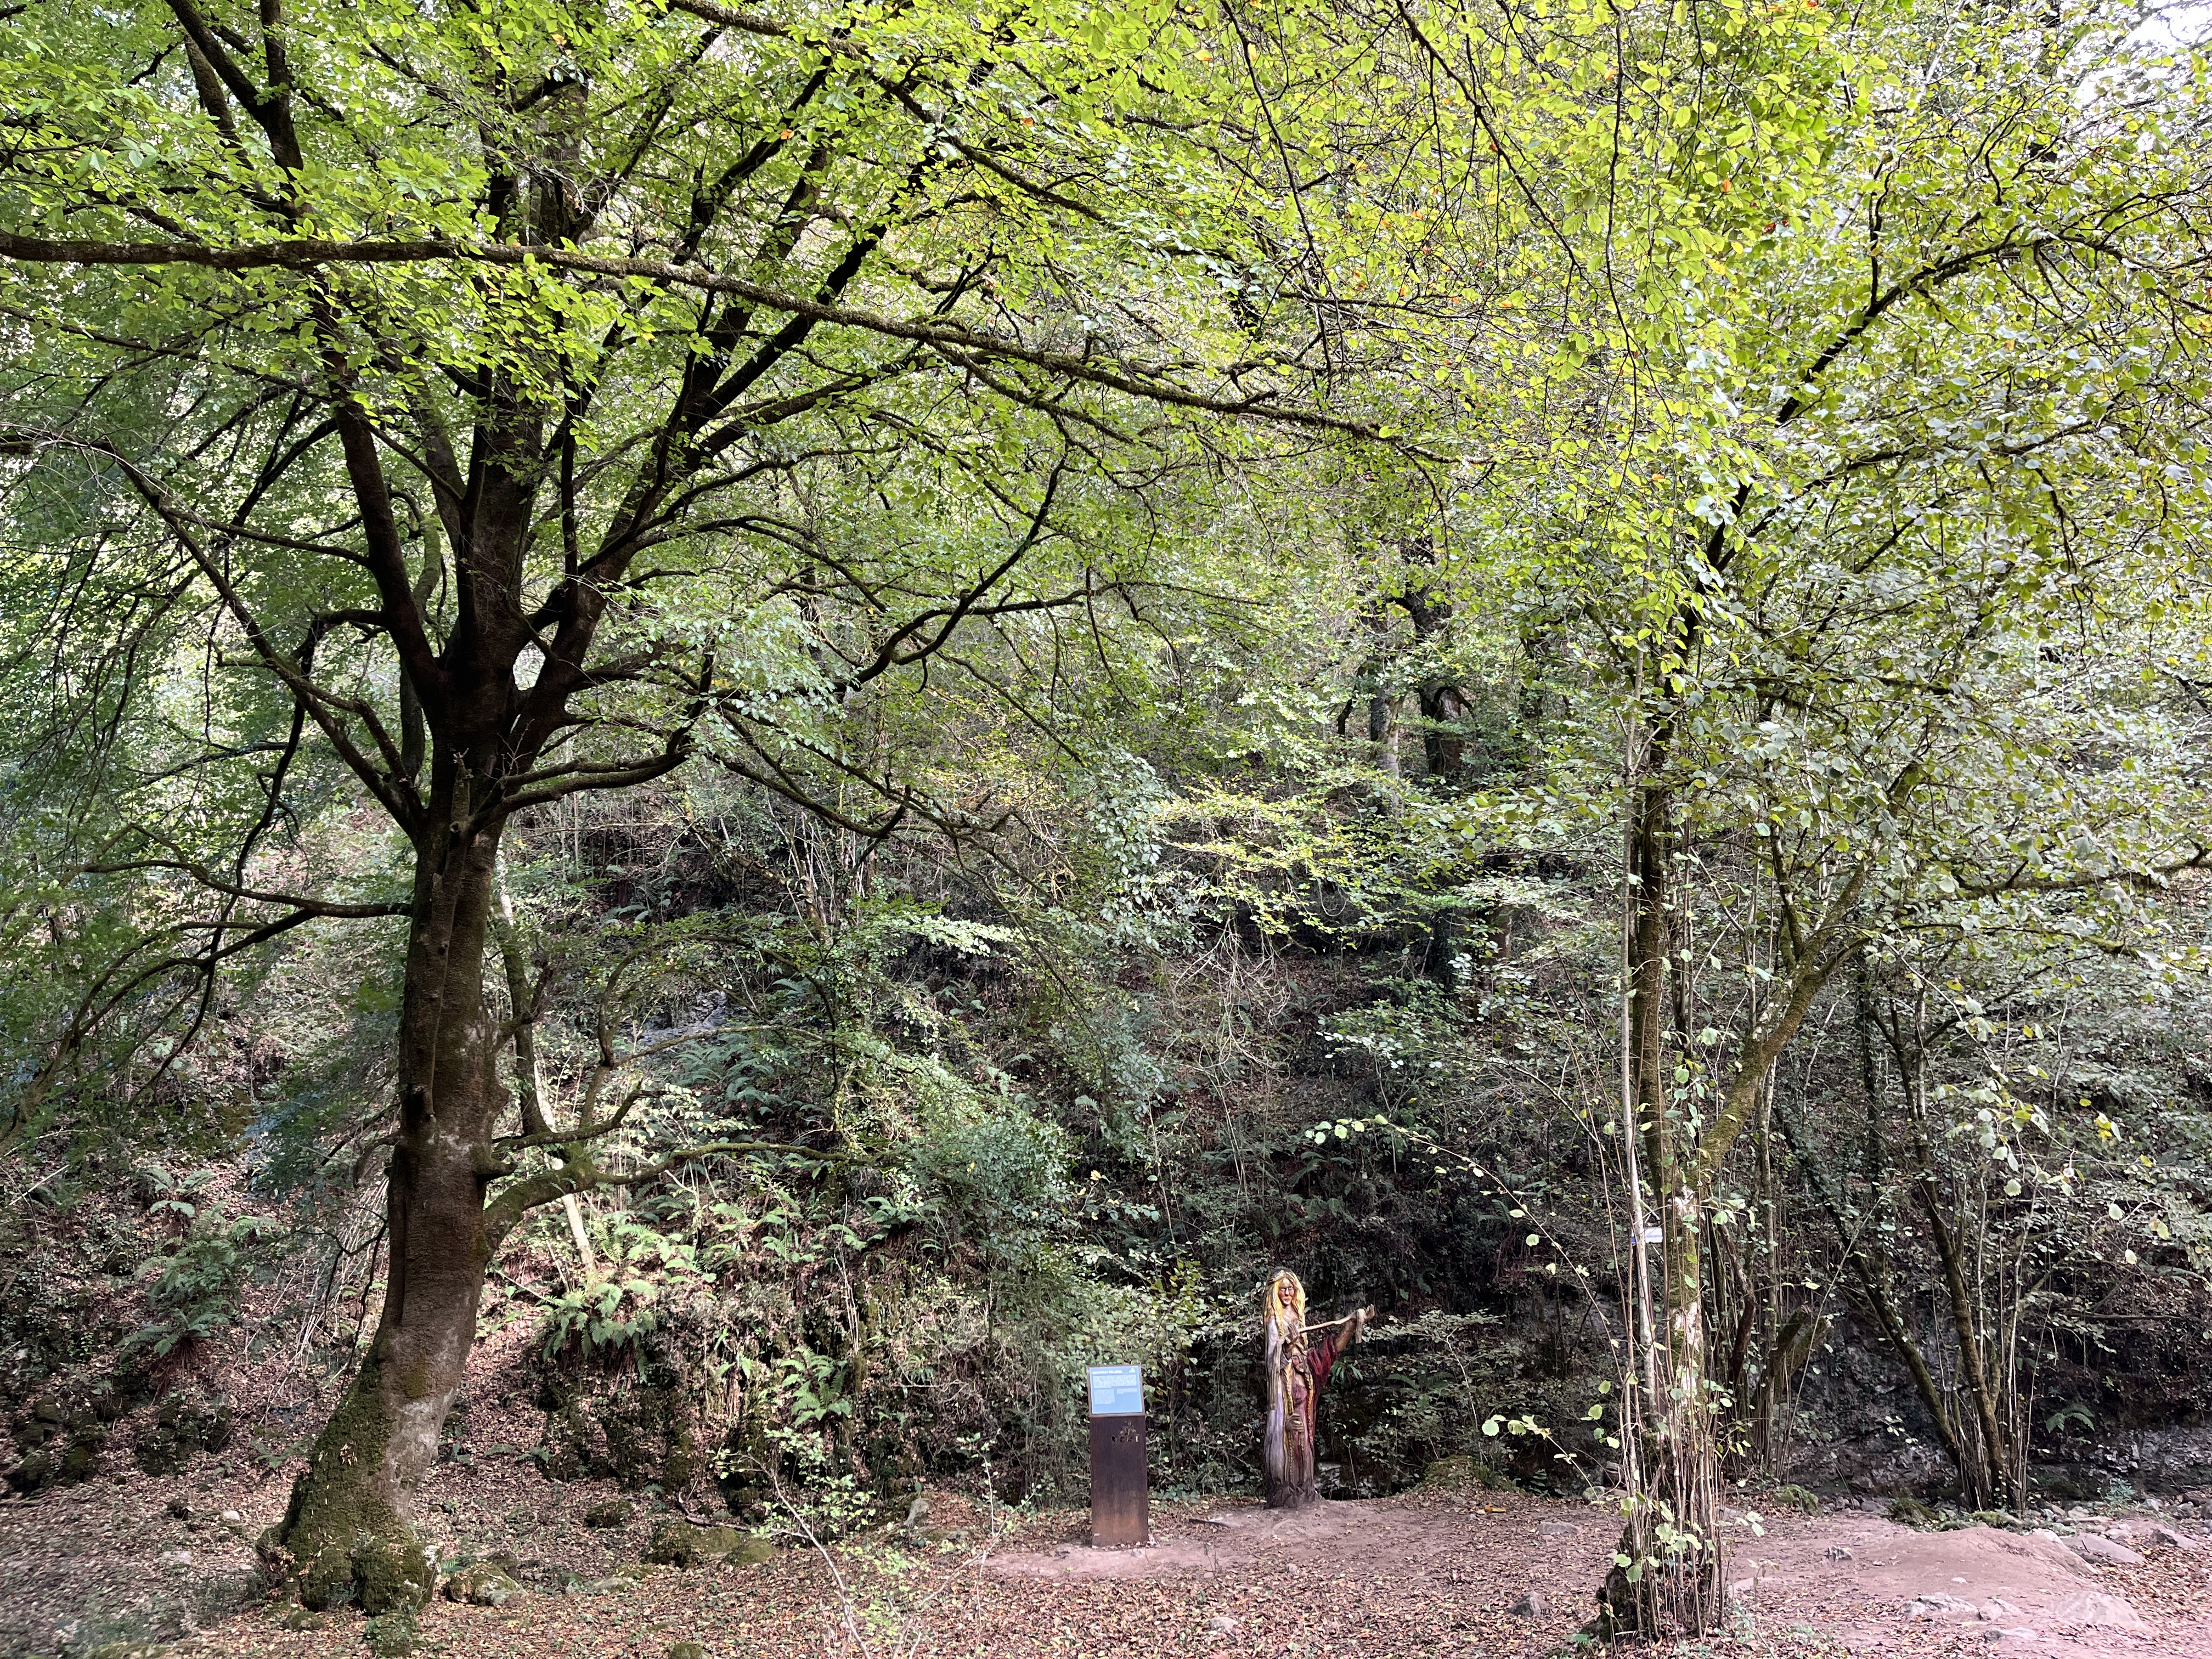 Cartel de Ruta interpretativa por el bosque atlántico. Ruta Mitológica del Monte Tejas, San Felices de Buelna